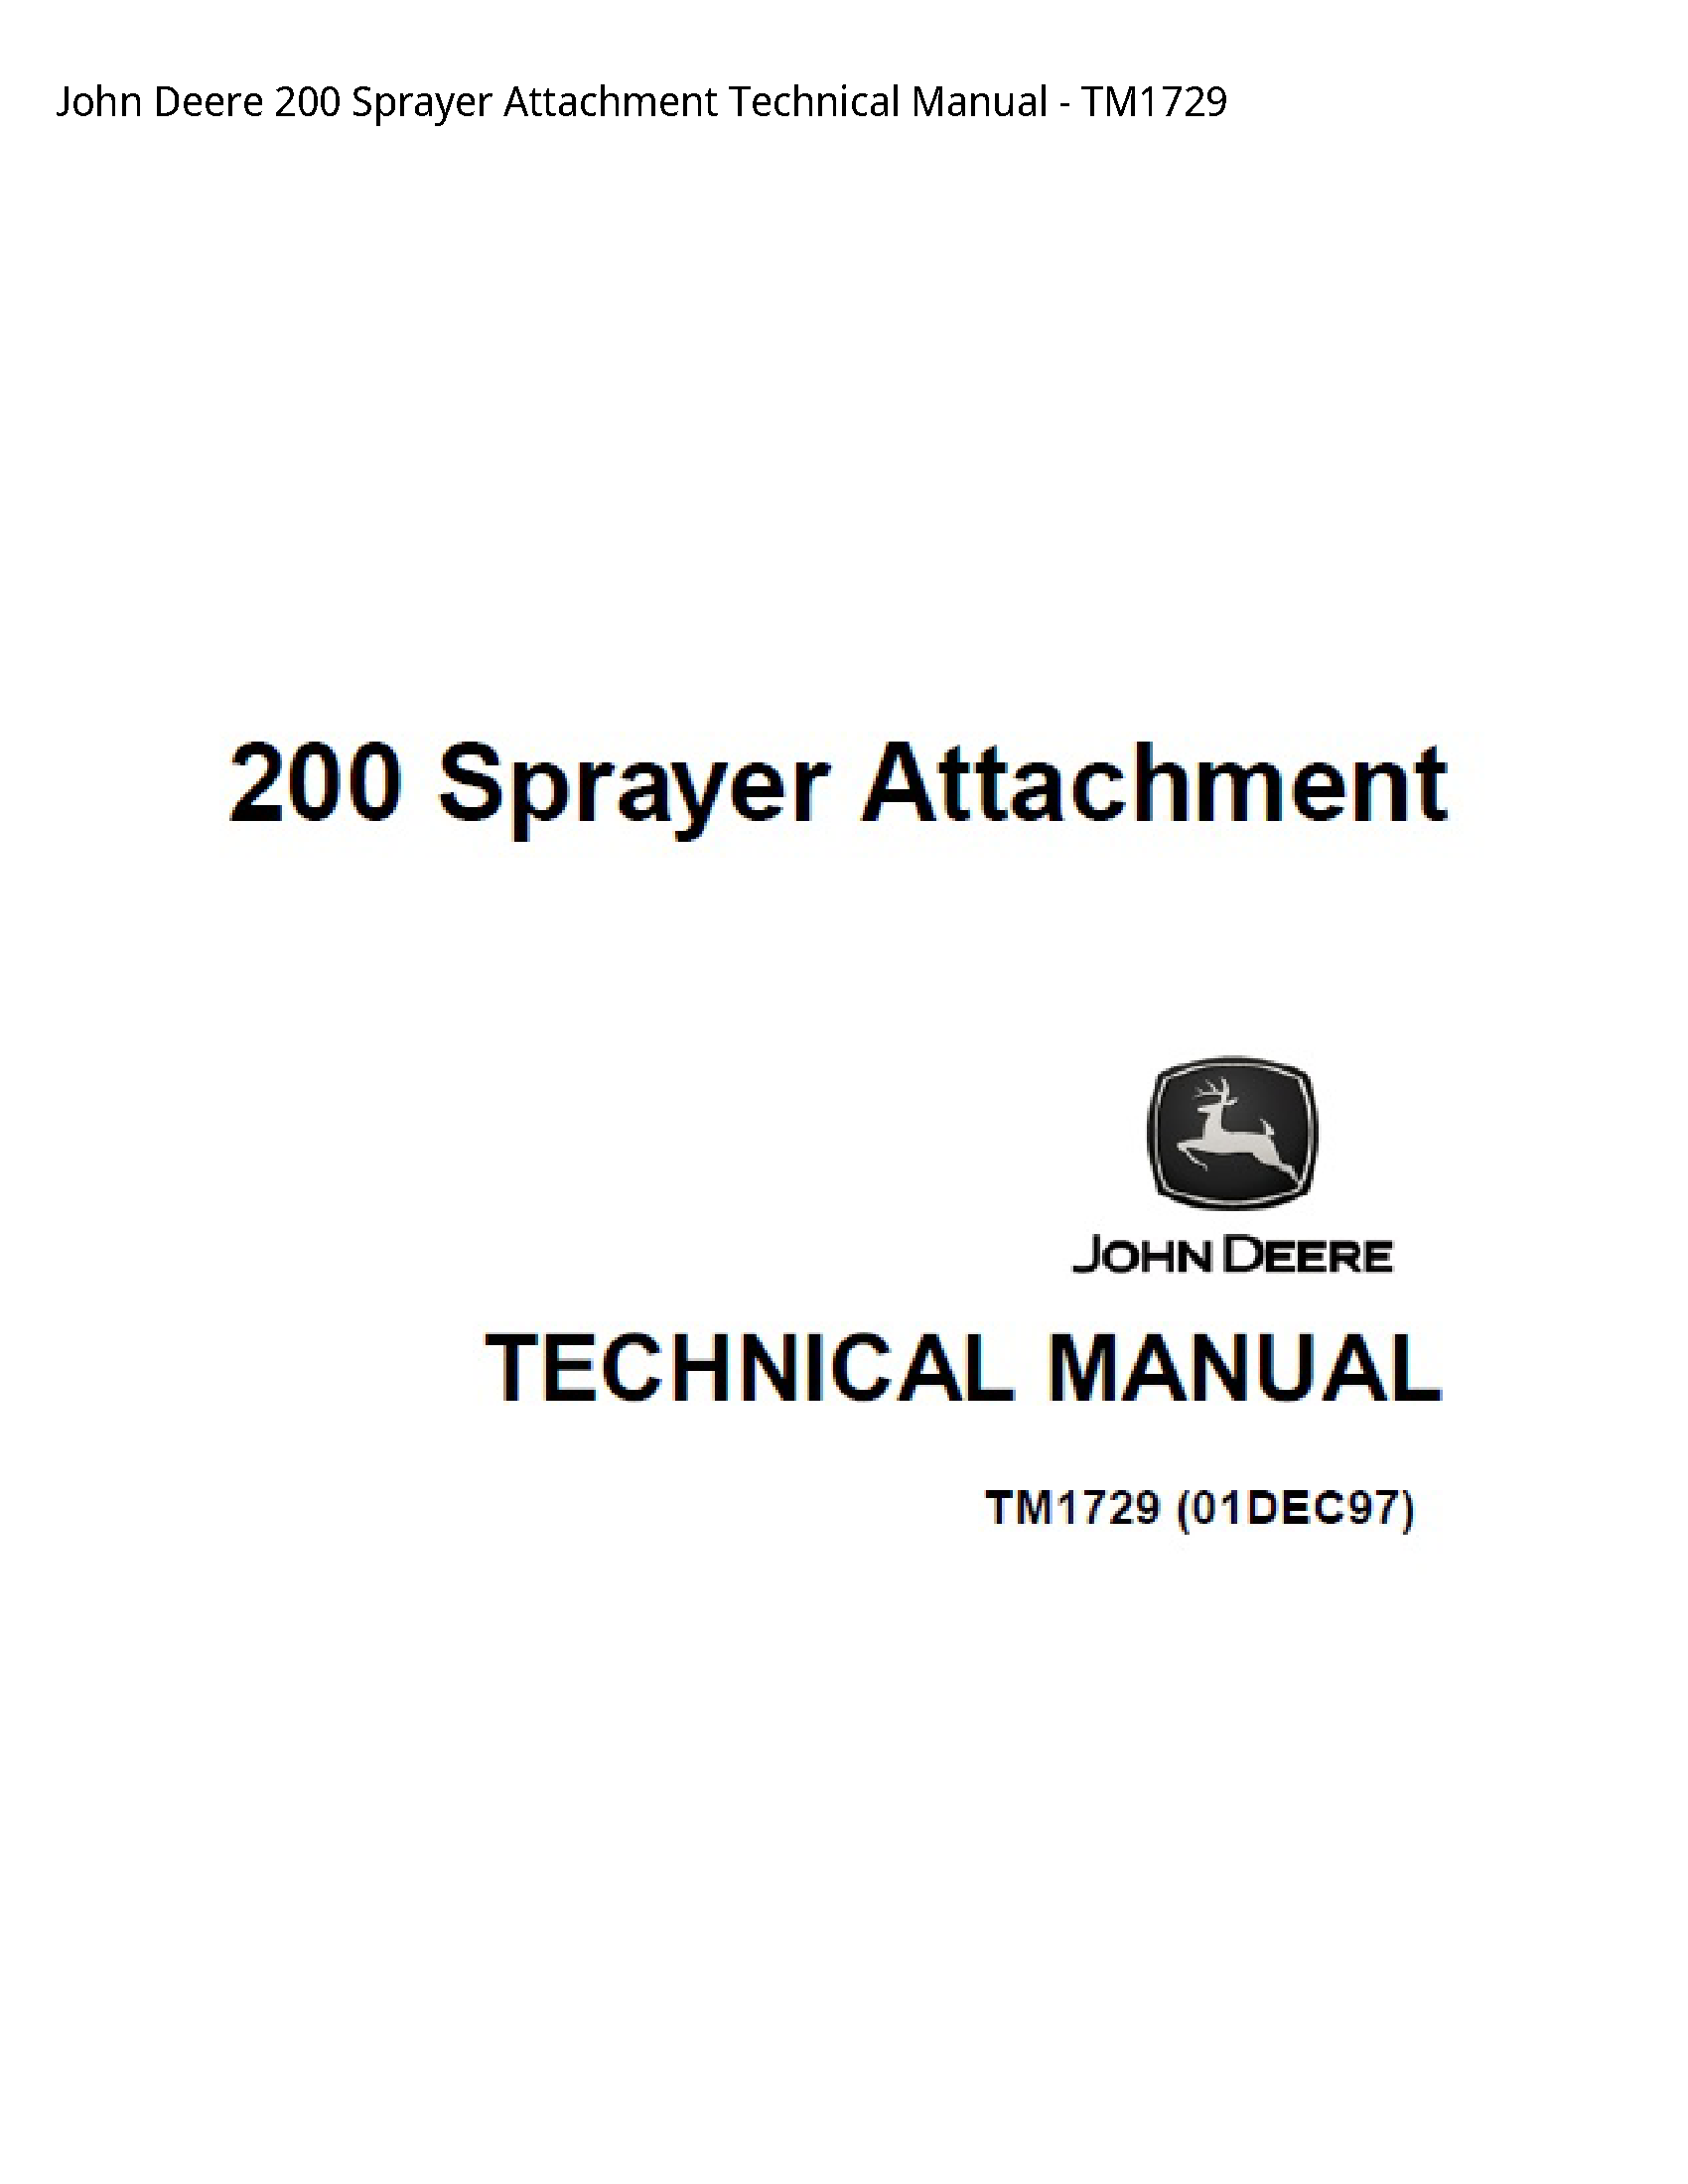 John Deere 200 Sprayer Attachment Technical manual